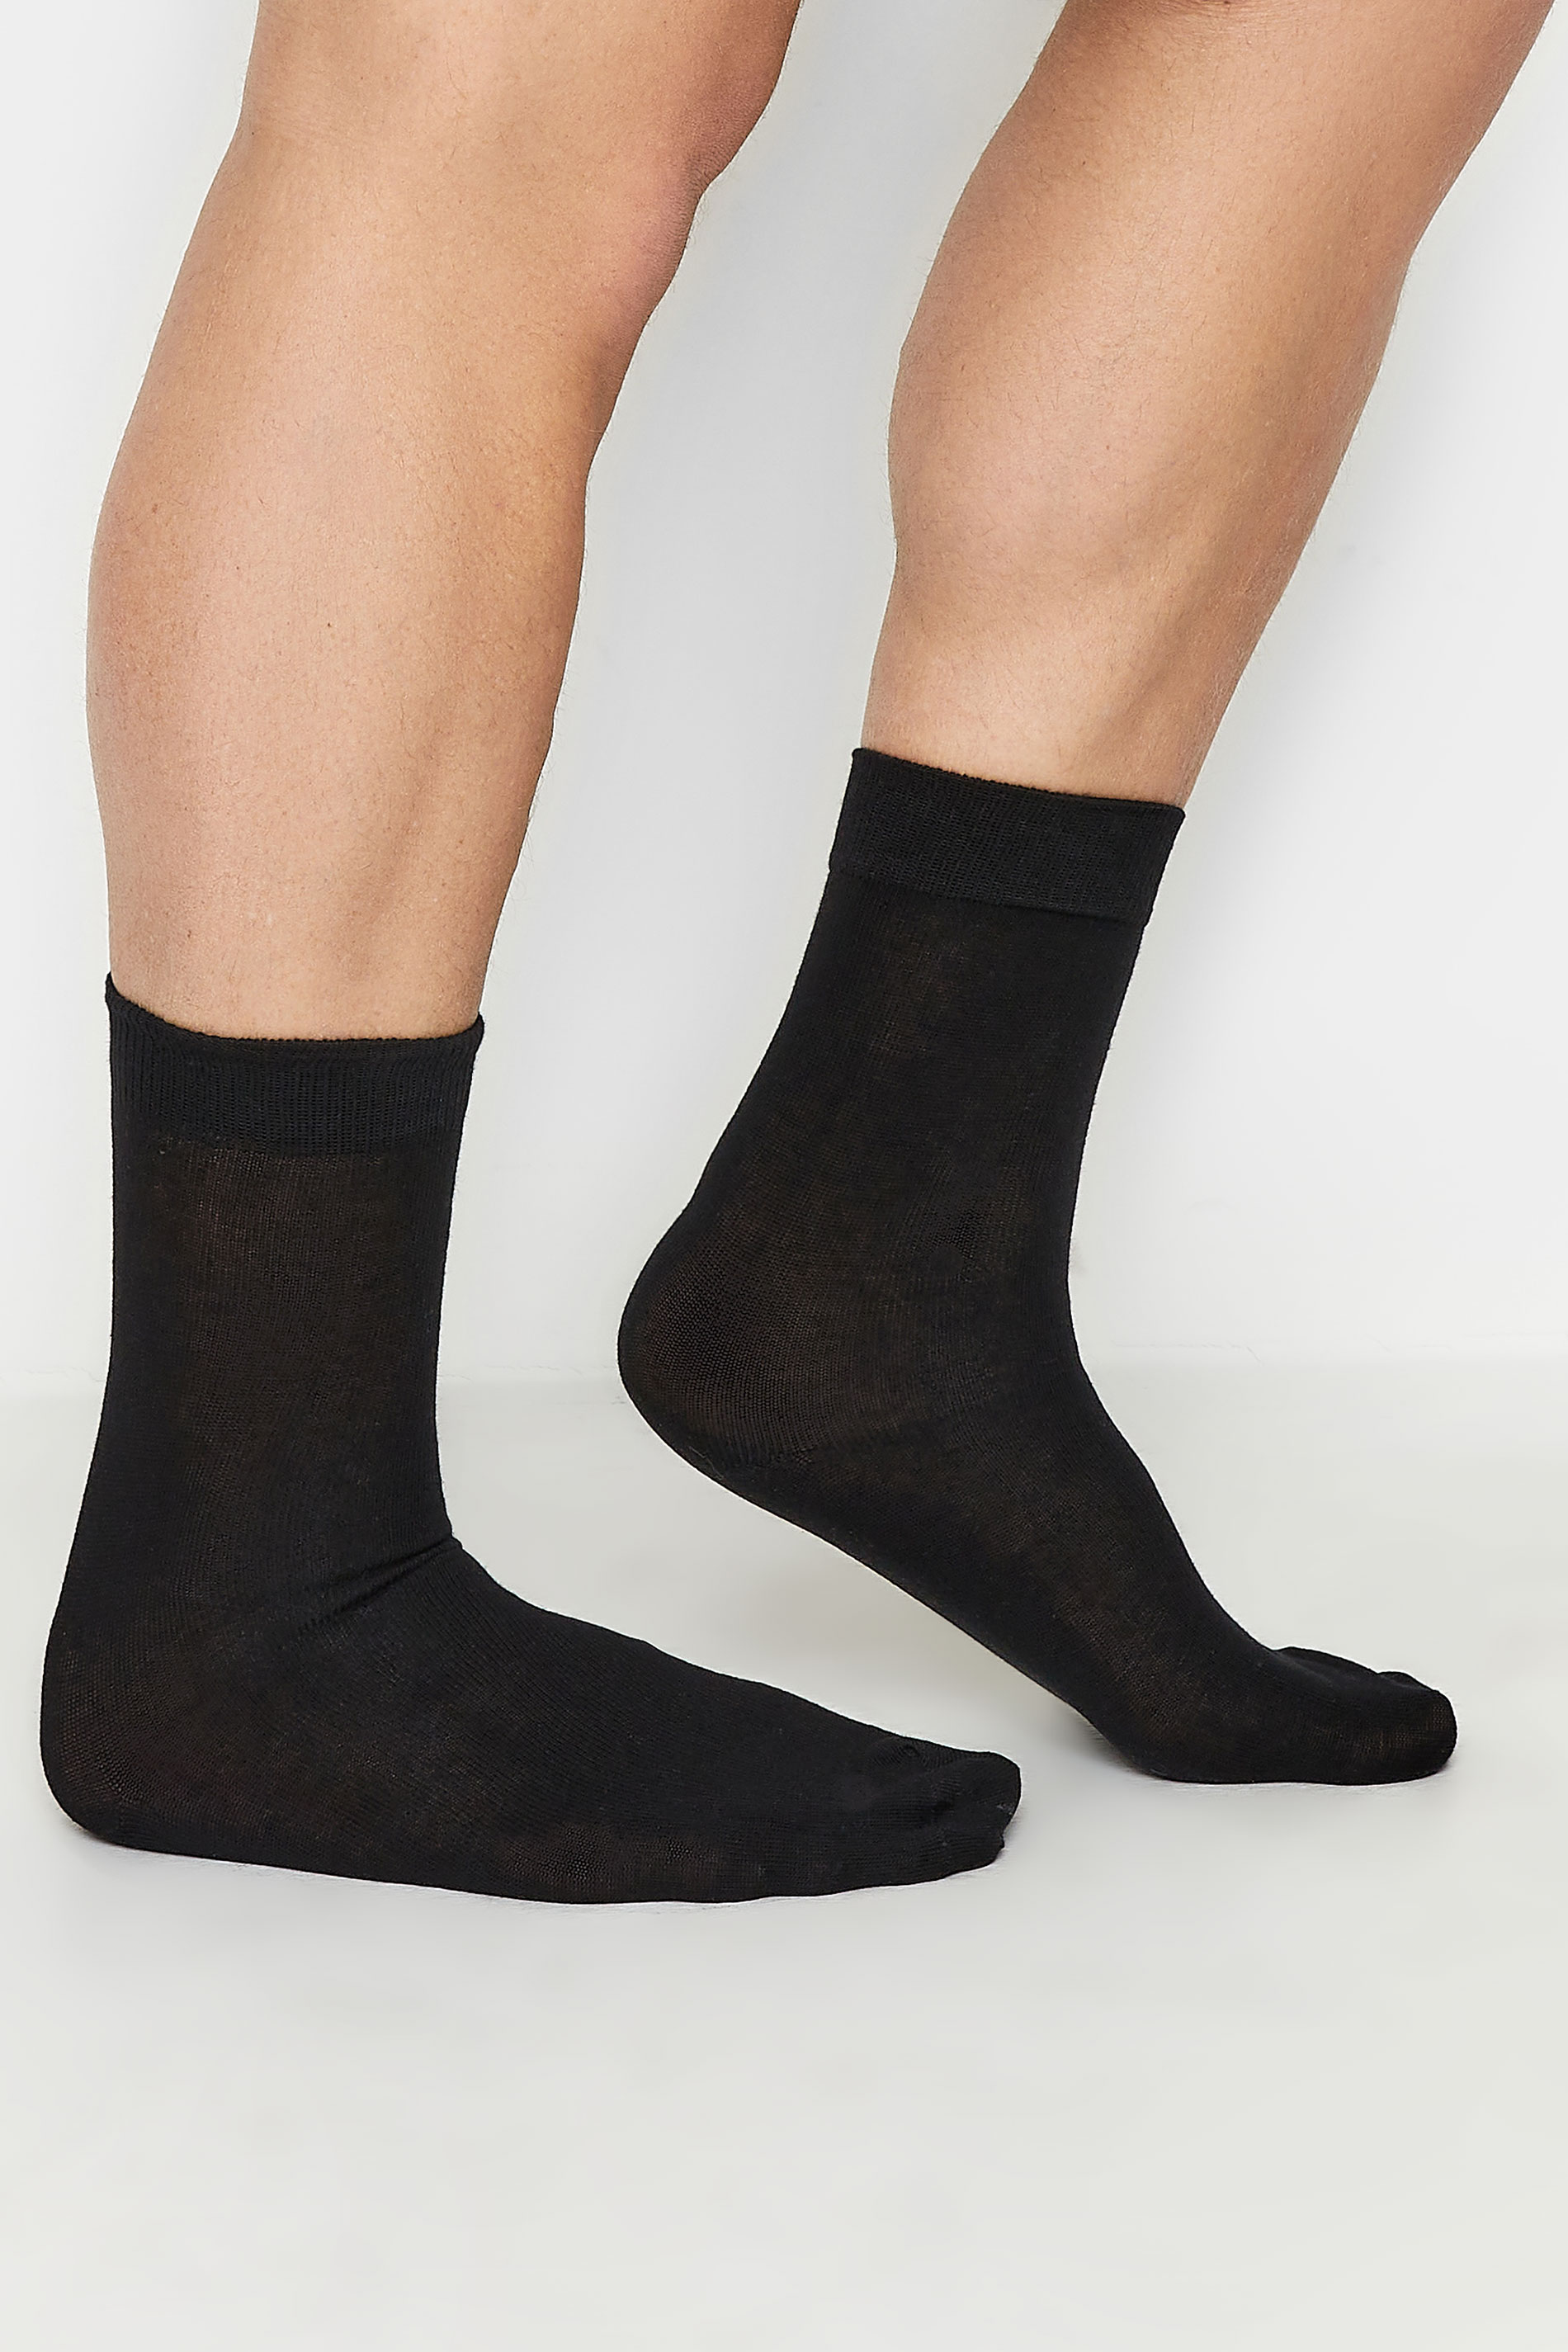 BadRhino Black 5 Pack Ankle Socks | BadRhino 2